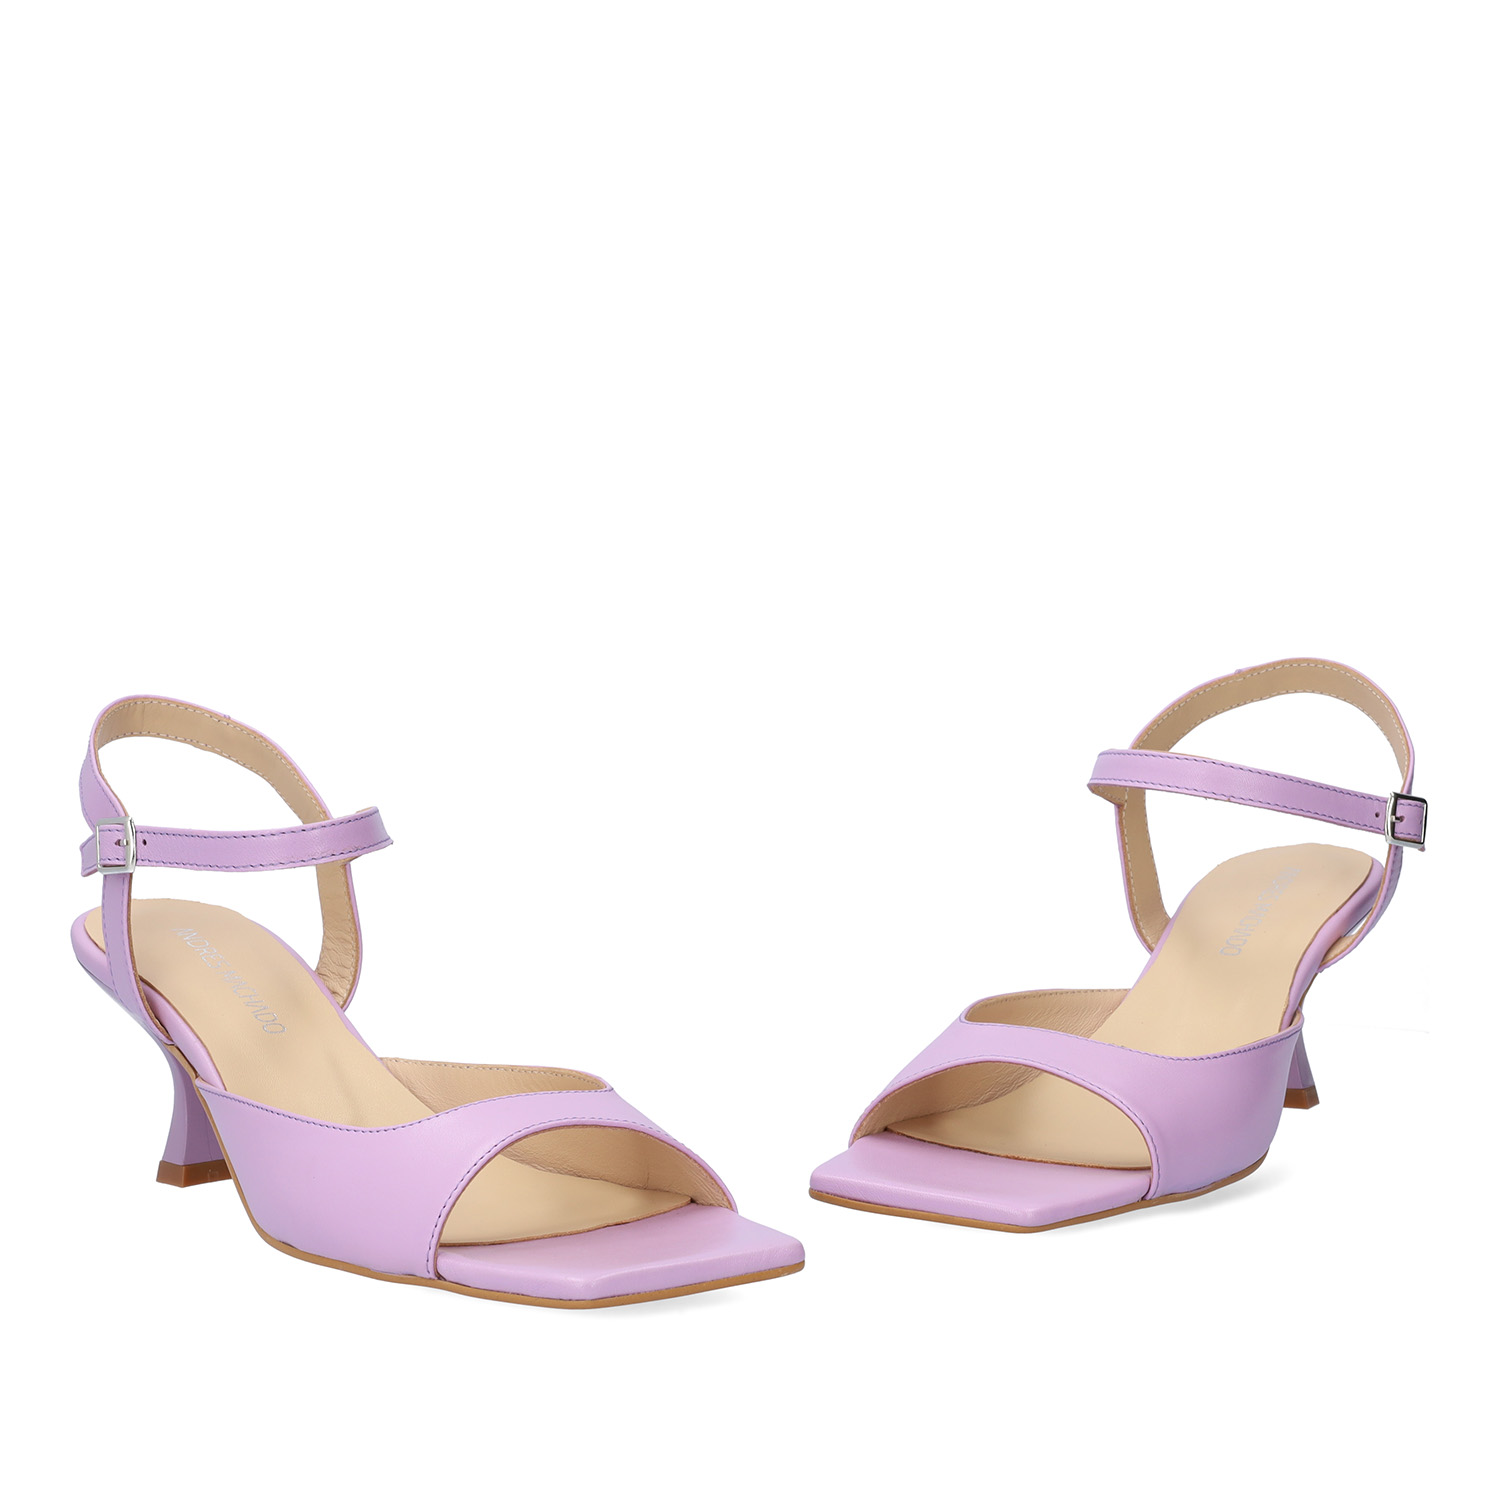 Purple leather heeled sandals 